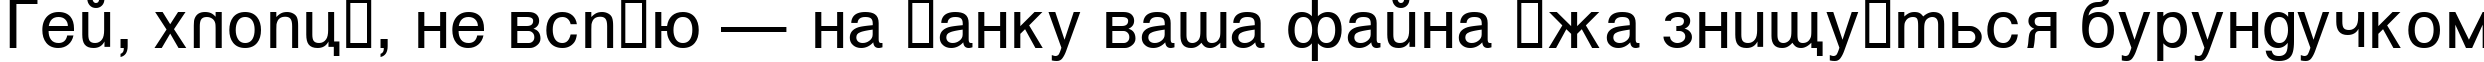 Пример написания шрифтом Vanta текста на украинском